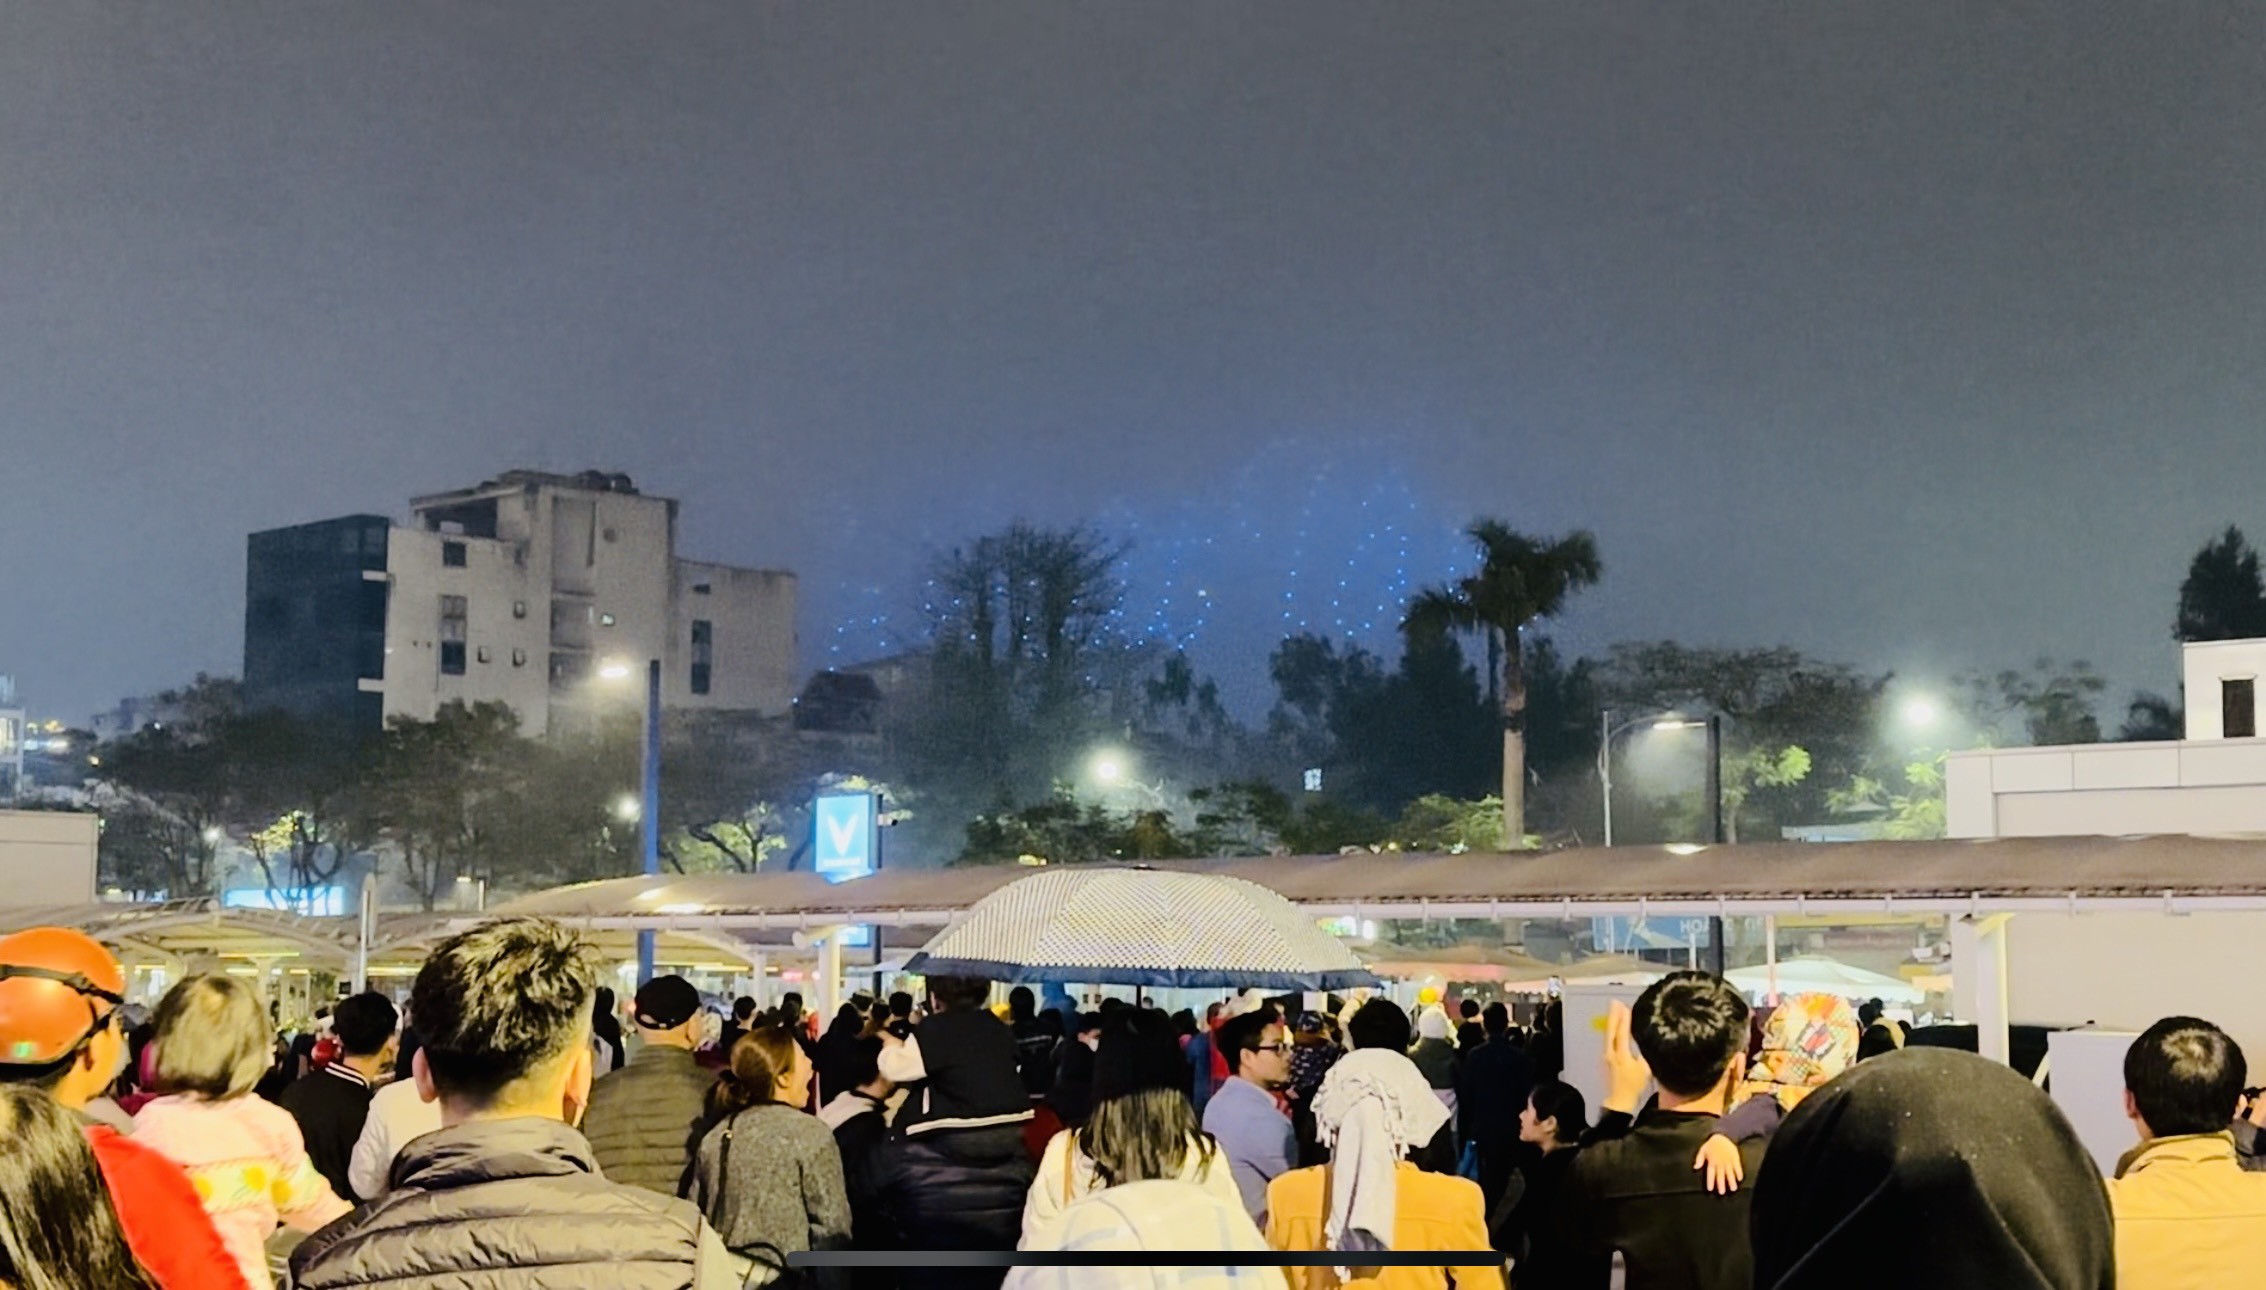 Tối 9/3, tại phố Trịnh Công Sơn (tuyến phố sát Hồ Tây, quận Tây Hồ) đã diễn ra màn trình diễn ánh sáng với hàng trăm chiếc drone. Màn trình diễn ánh sáng nằm trong khuôn khổ chương trình "Du lịch Hà Nội chào 2024 - Get on Hanoi 2024" nhằm quảng bá hình ảnh Thủ đô Hà Nội đến với bạn bè trong nước và quốc tế.